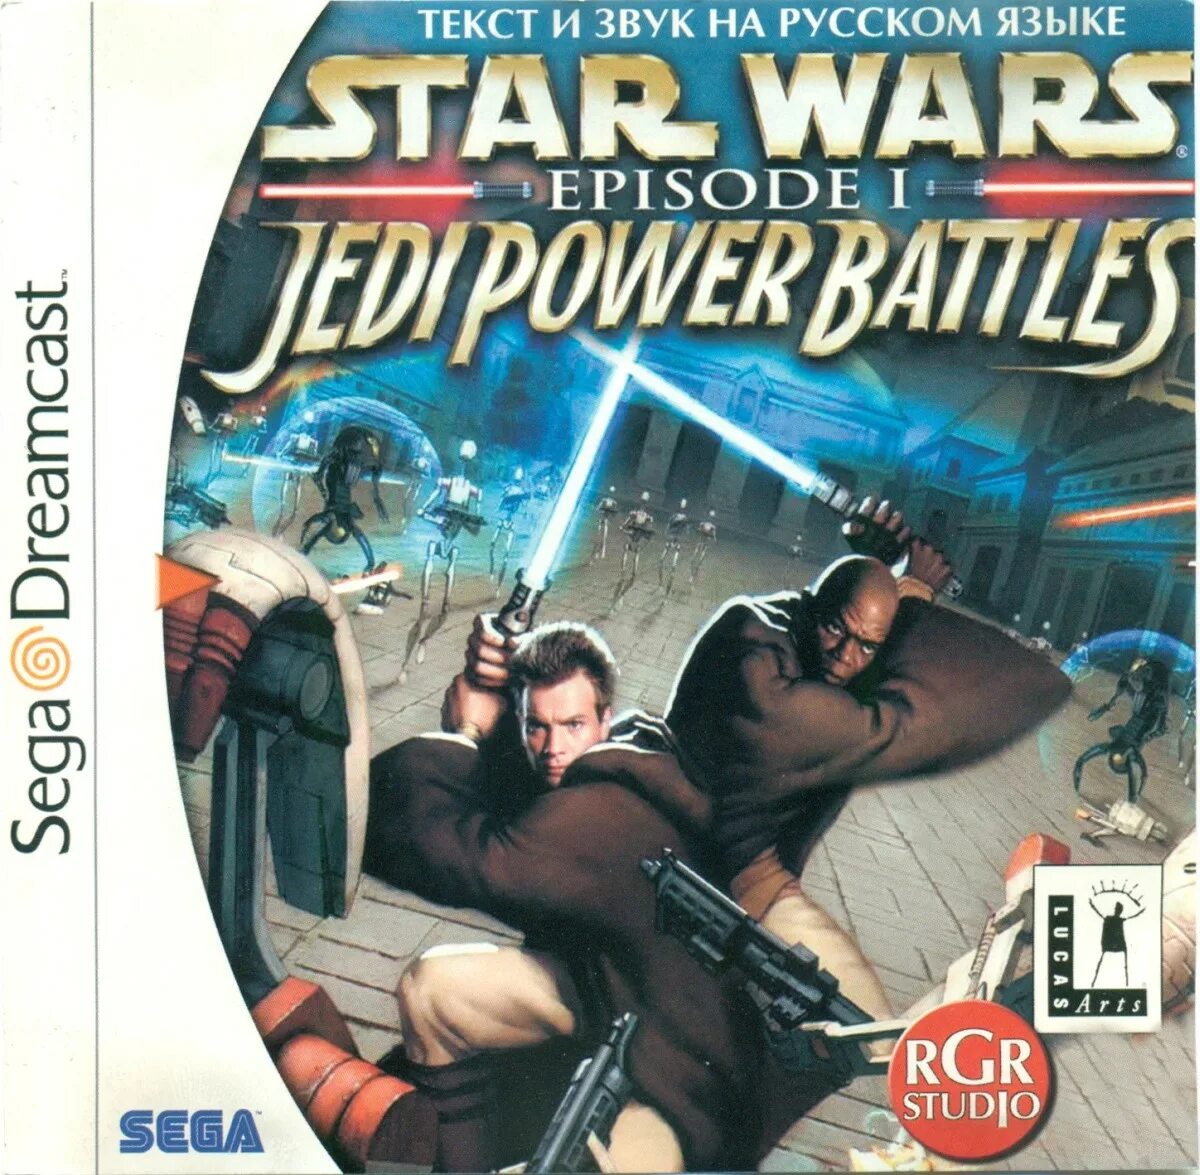 Sega Dreamcast Star Wars Episode 1. Star Wars Episode 1 Jedi Power Battles. Star Wars Episode i Jedi Power Battles ps1. Star Wars Jedi Power Battles ps1 Disc. Star wars jedi power